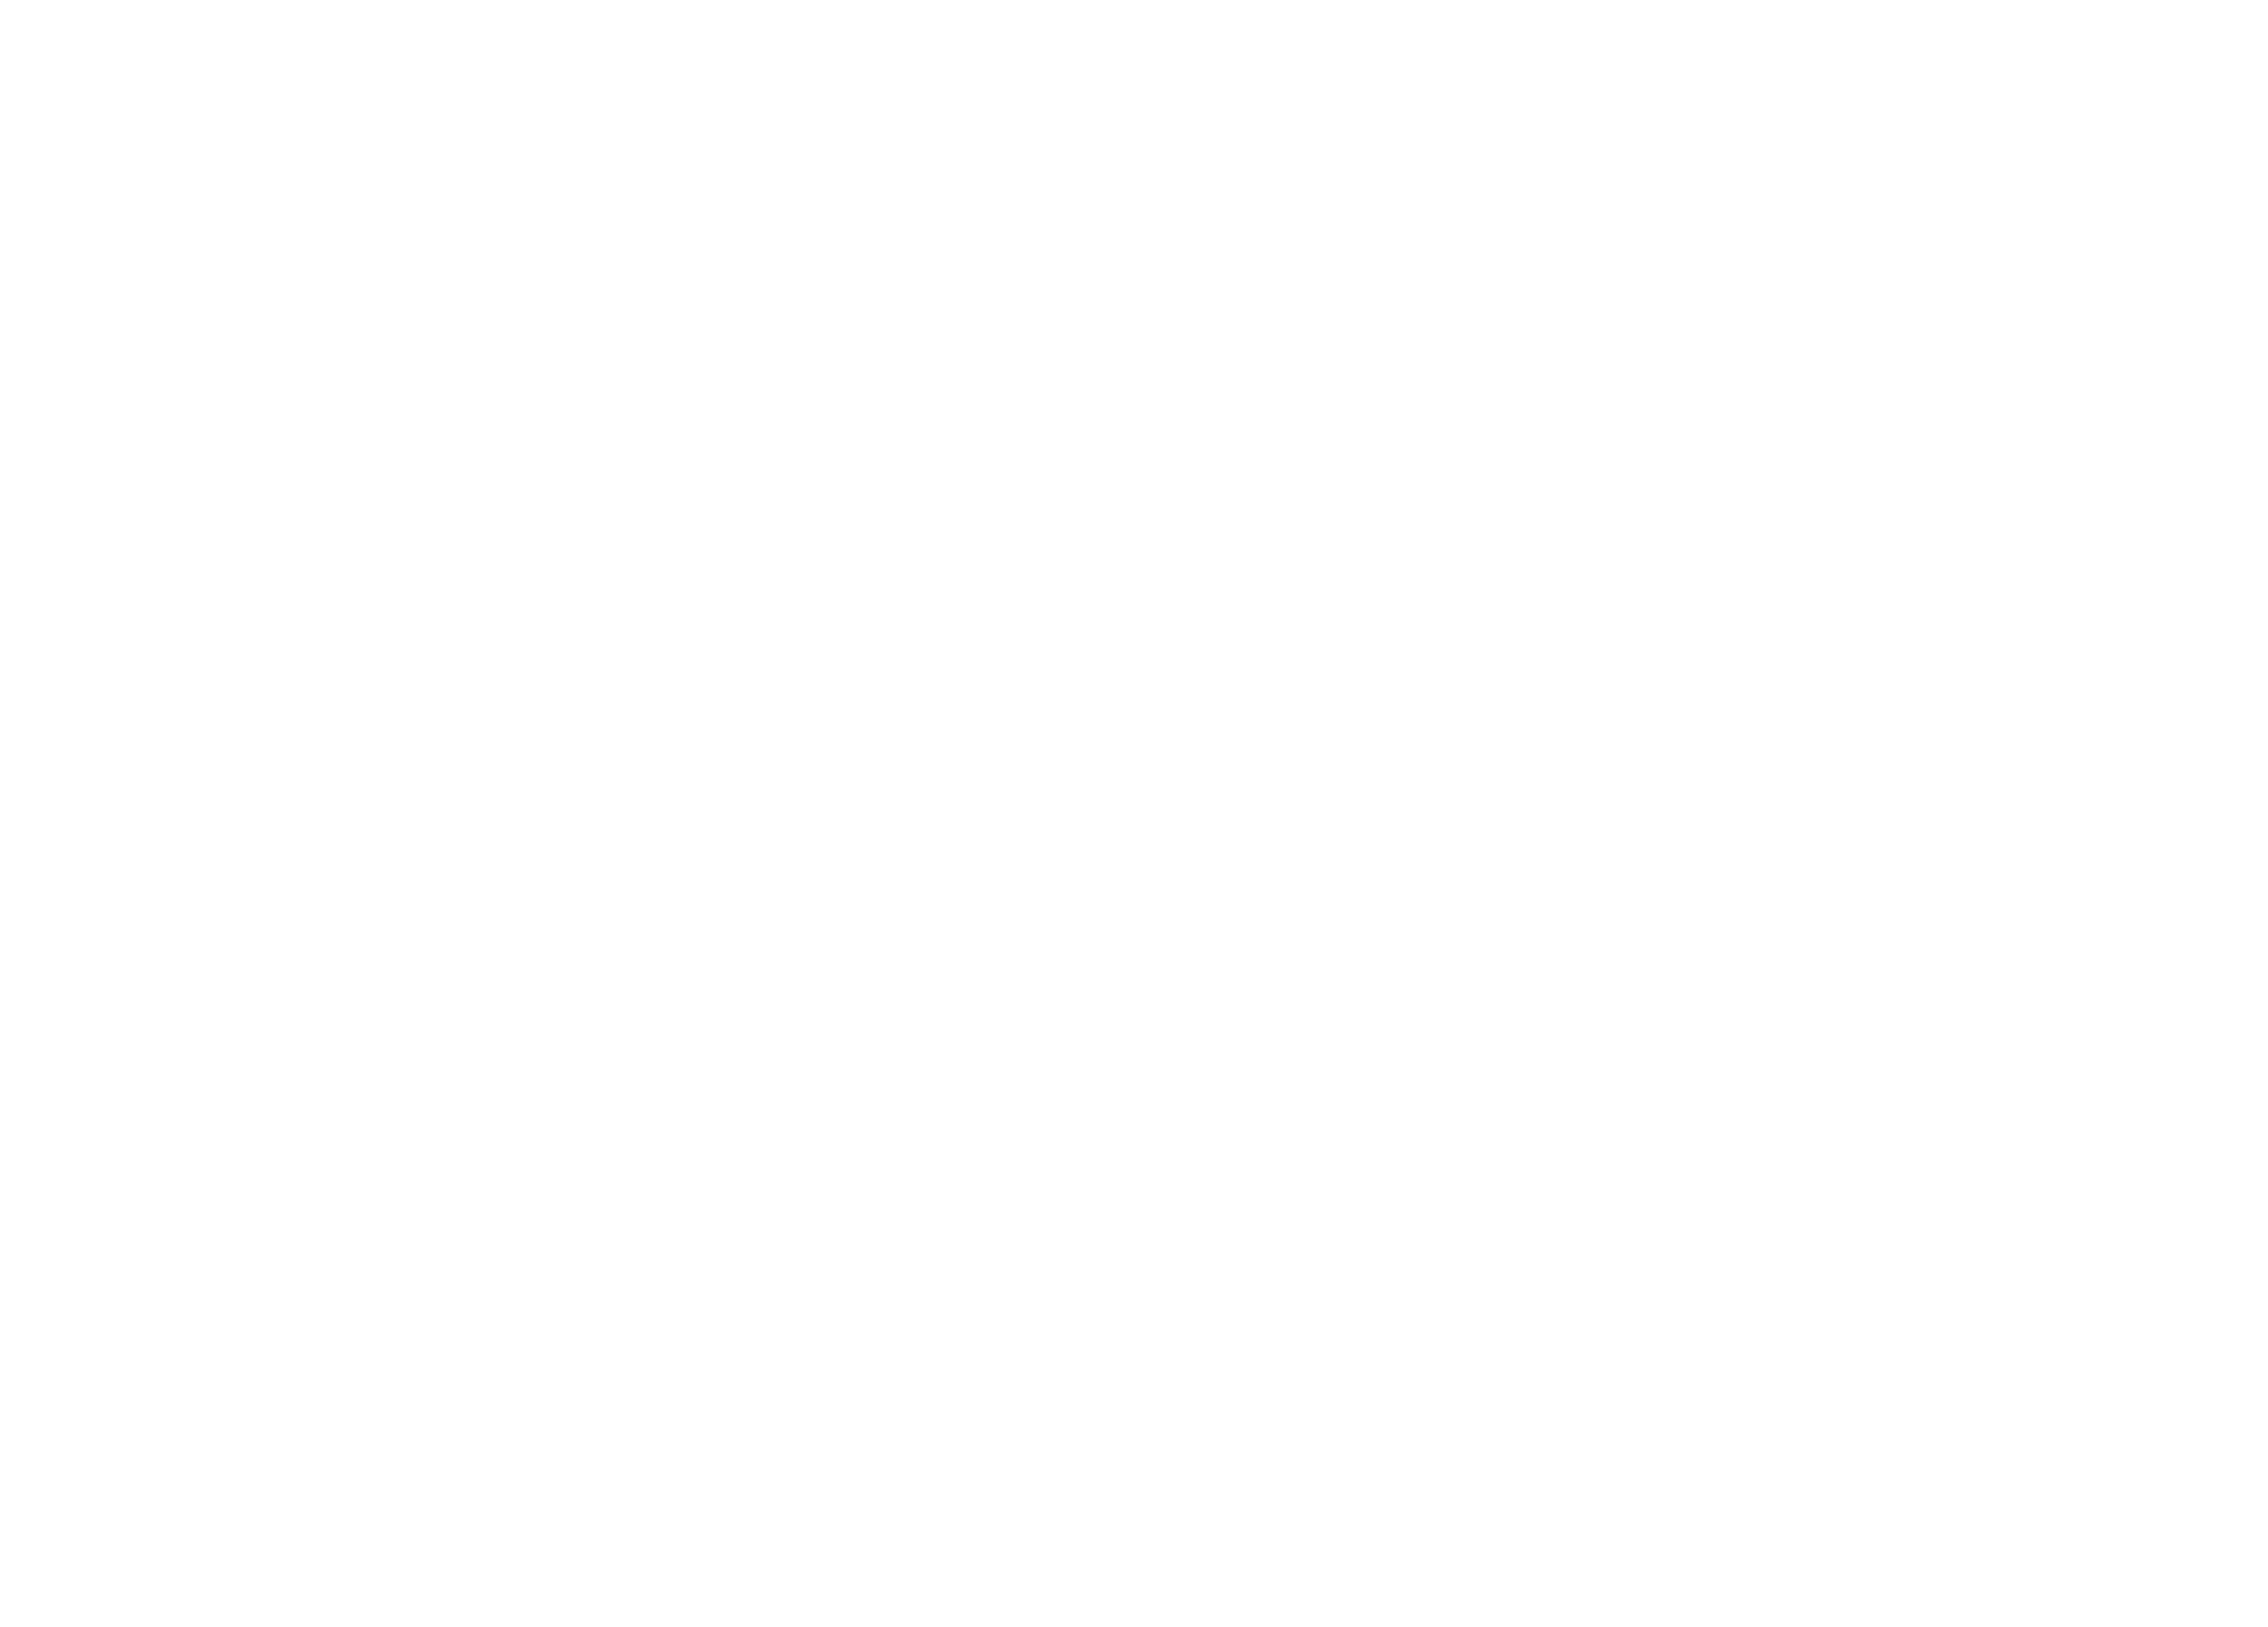 MuDA